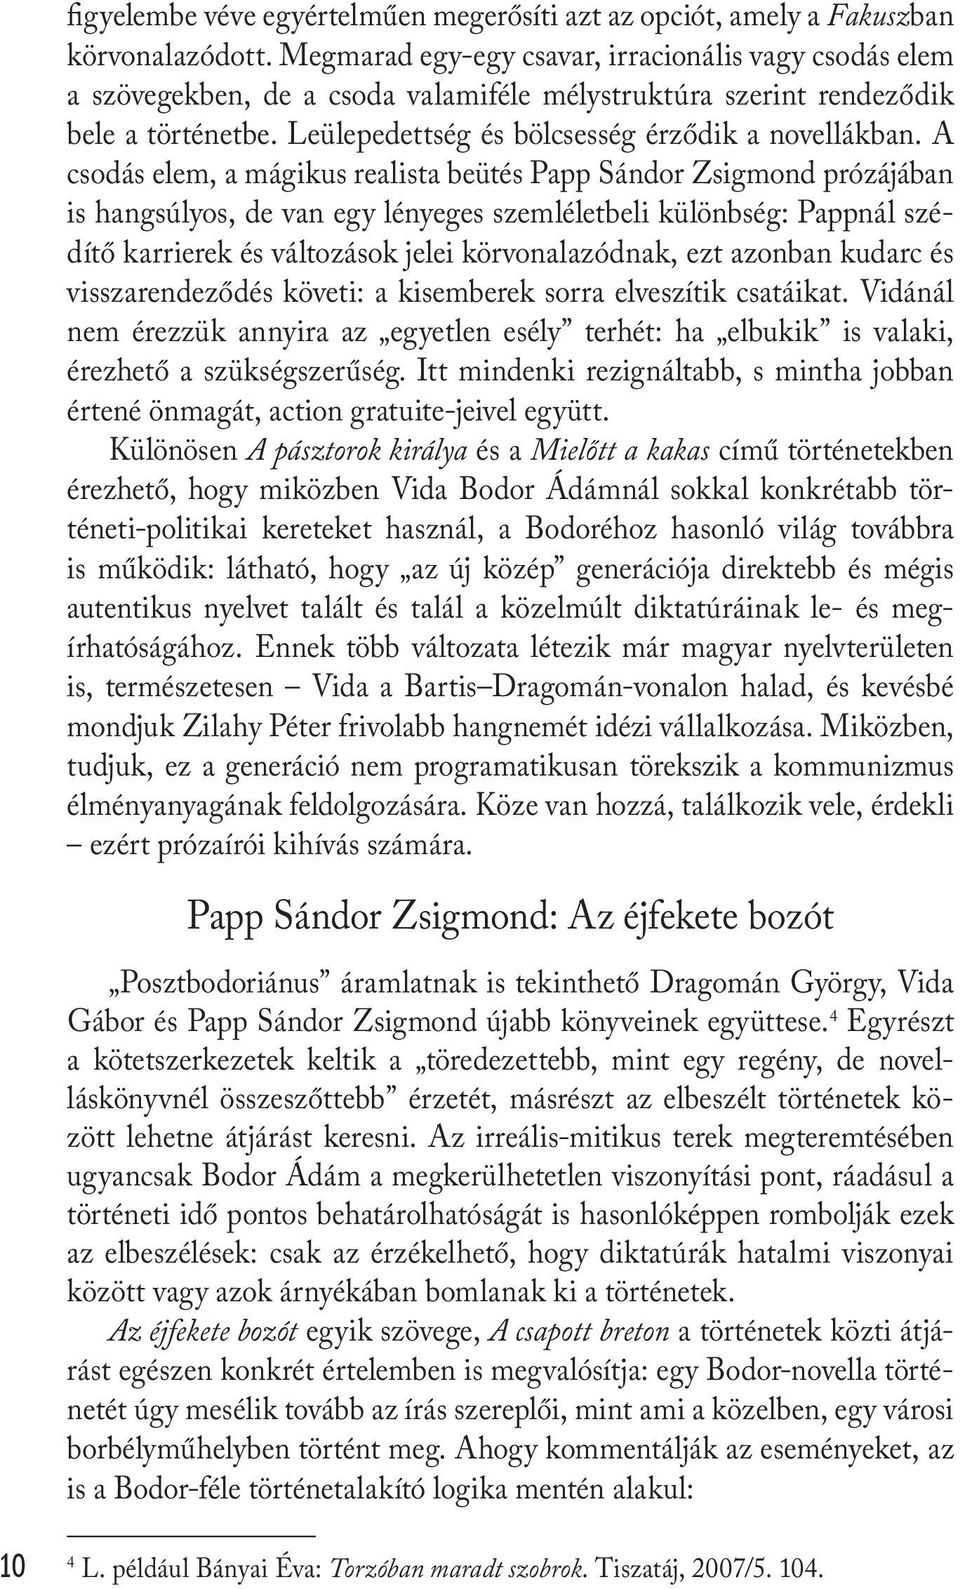 A csodás elem, a mágikus realista beütés Papp Sándor Zsigmond prózájában is hangsúlyos, de van egy lényeges szemléletbeli különbség: Pappnál szédítő karrierek és változások jelei körvonalazódnak, ezt